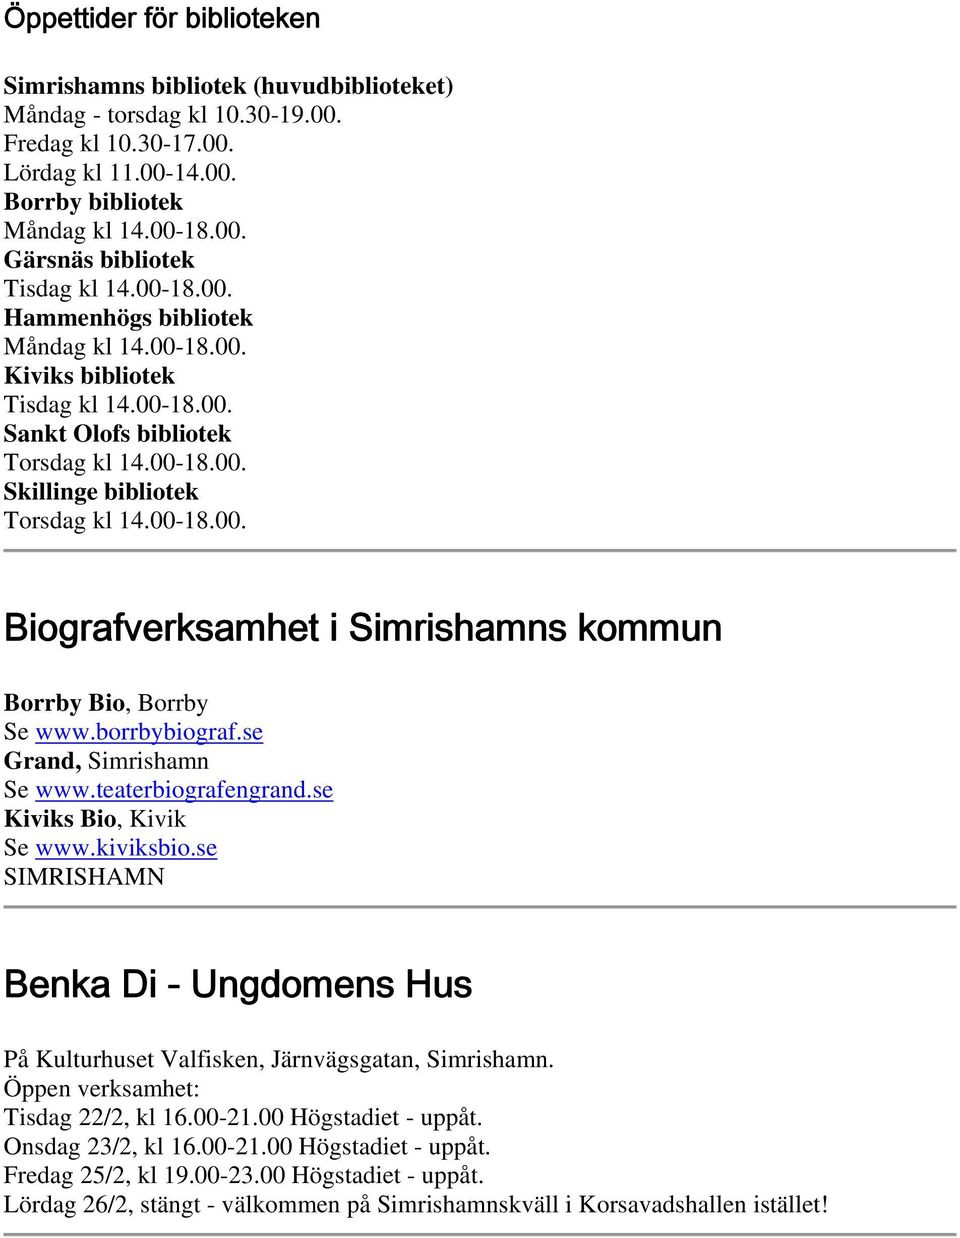 borrbybiograf.se Grand, Simrishamn Se www.teaterbiografengrand.se Kiviks Bio, Kivik Se www.kiviksbio.se SIMRISHAMN Benka Di - Ungdomens Hus På Kulturhuset Valfisken, Järnvägsgatan, Simrishamn.